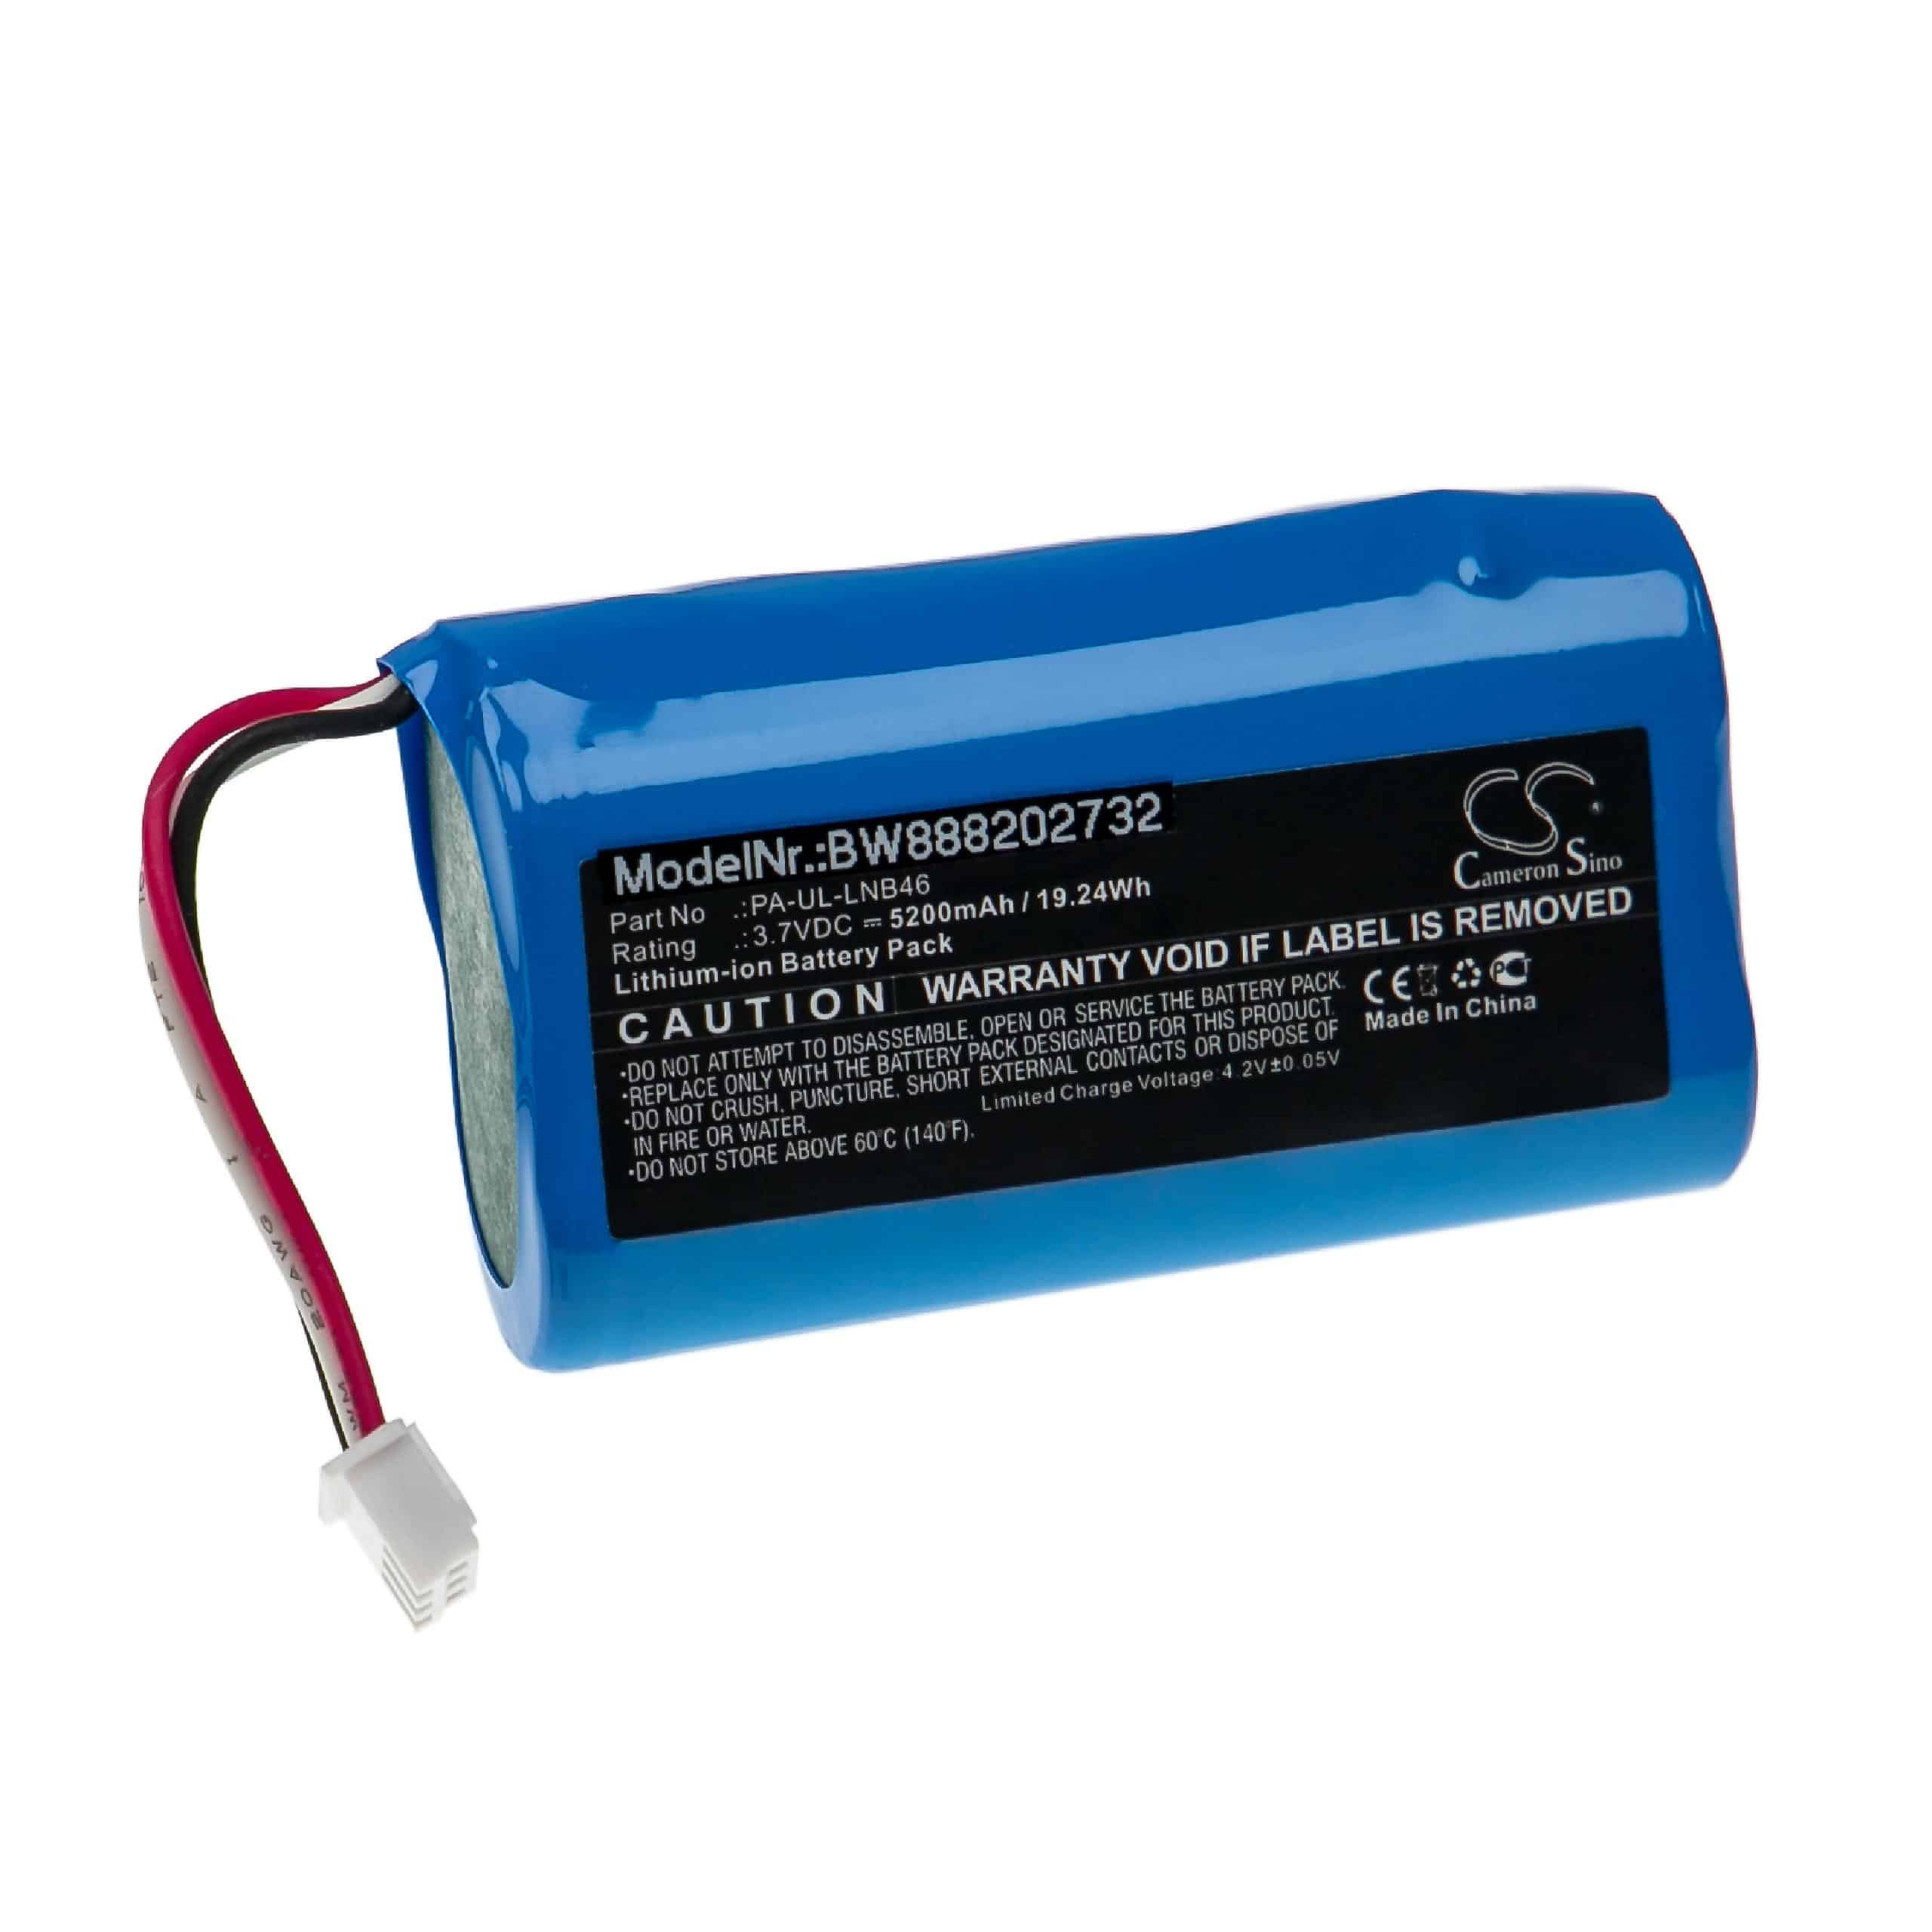 Battery for Fey Elektronik PA-UL-LNB46 - 5200mAh 3.7V Li-Ion